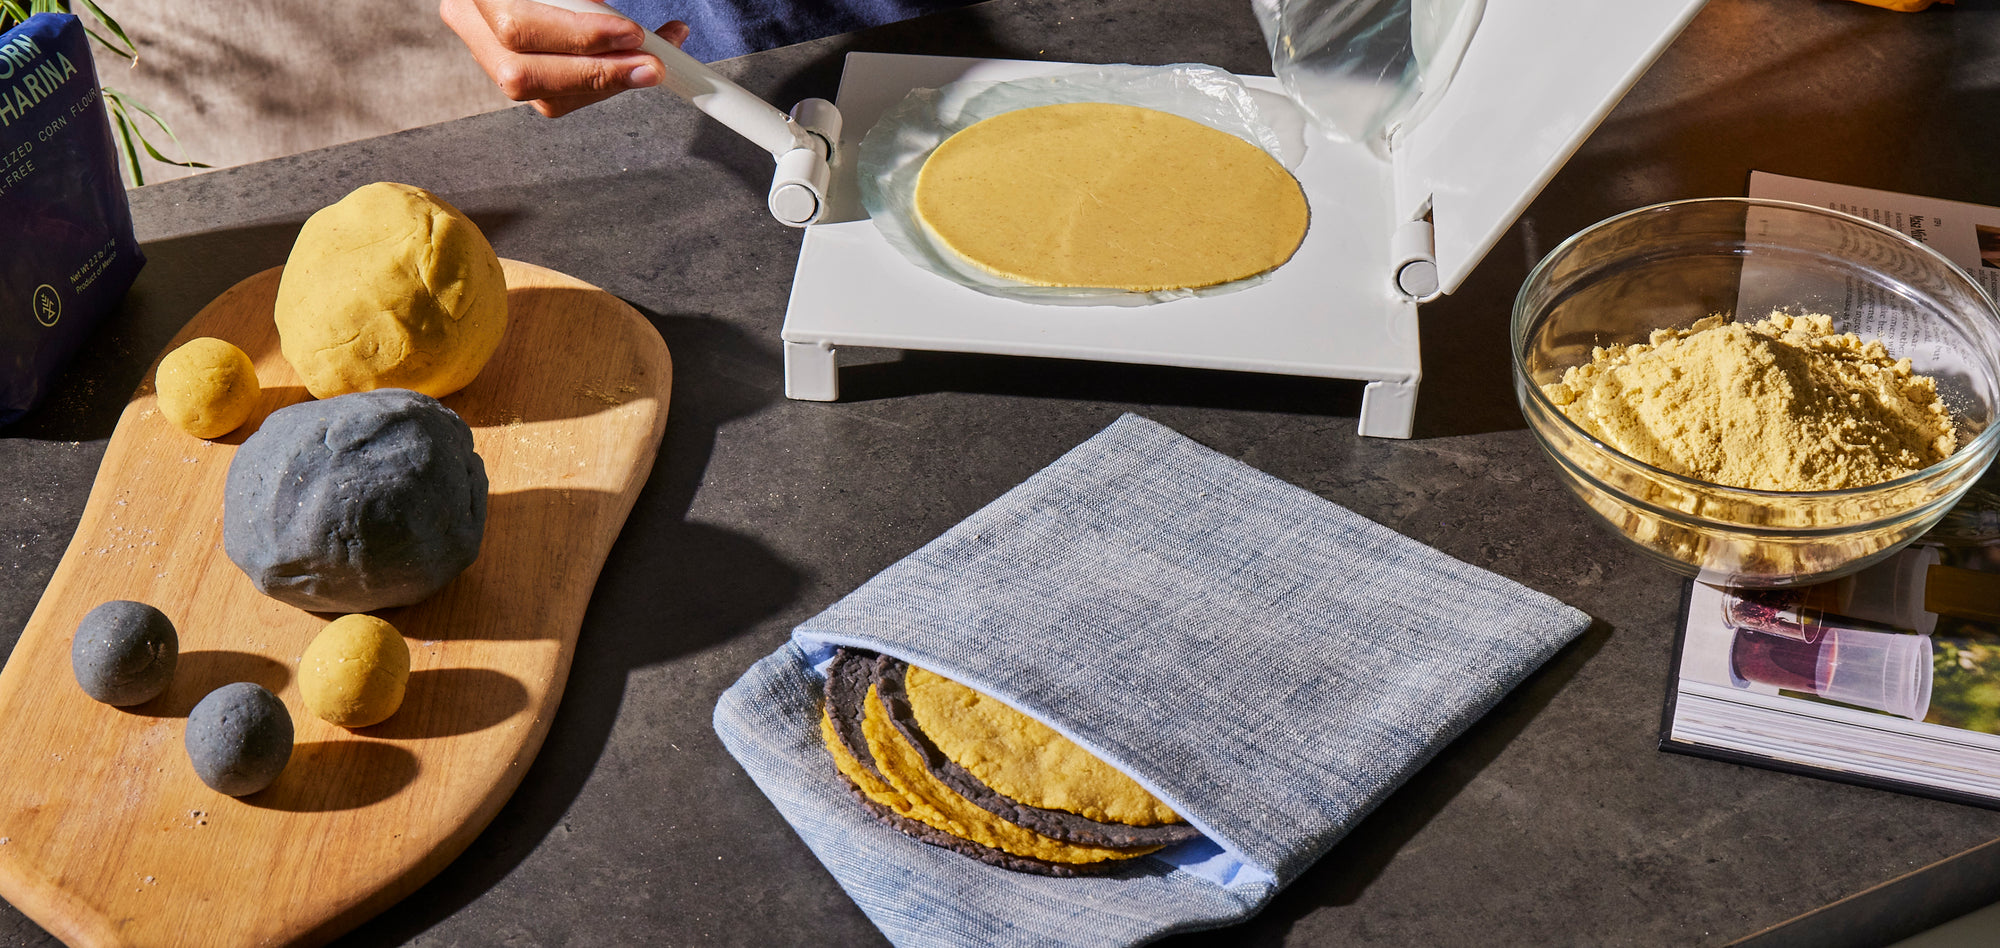 El último paso crucial para hacer tortillas caseras